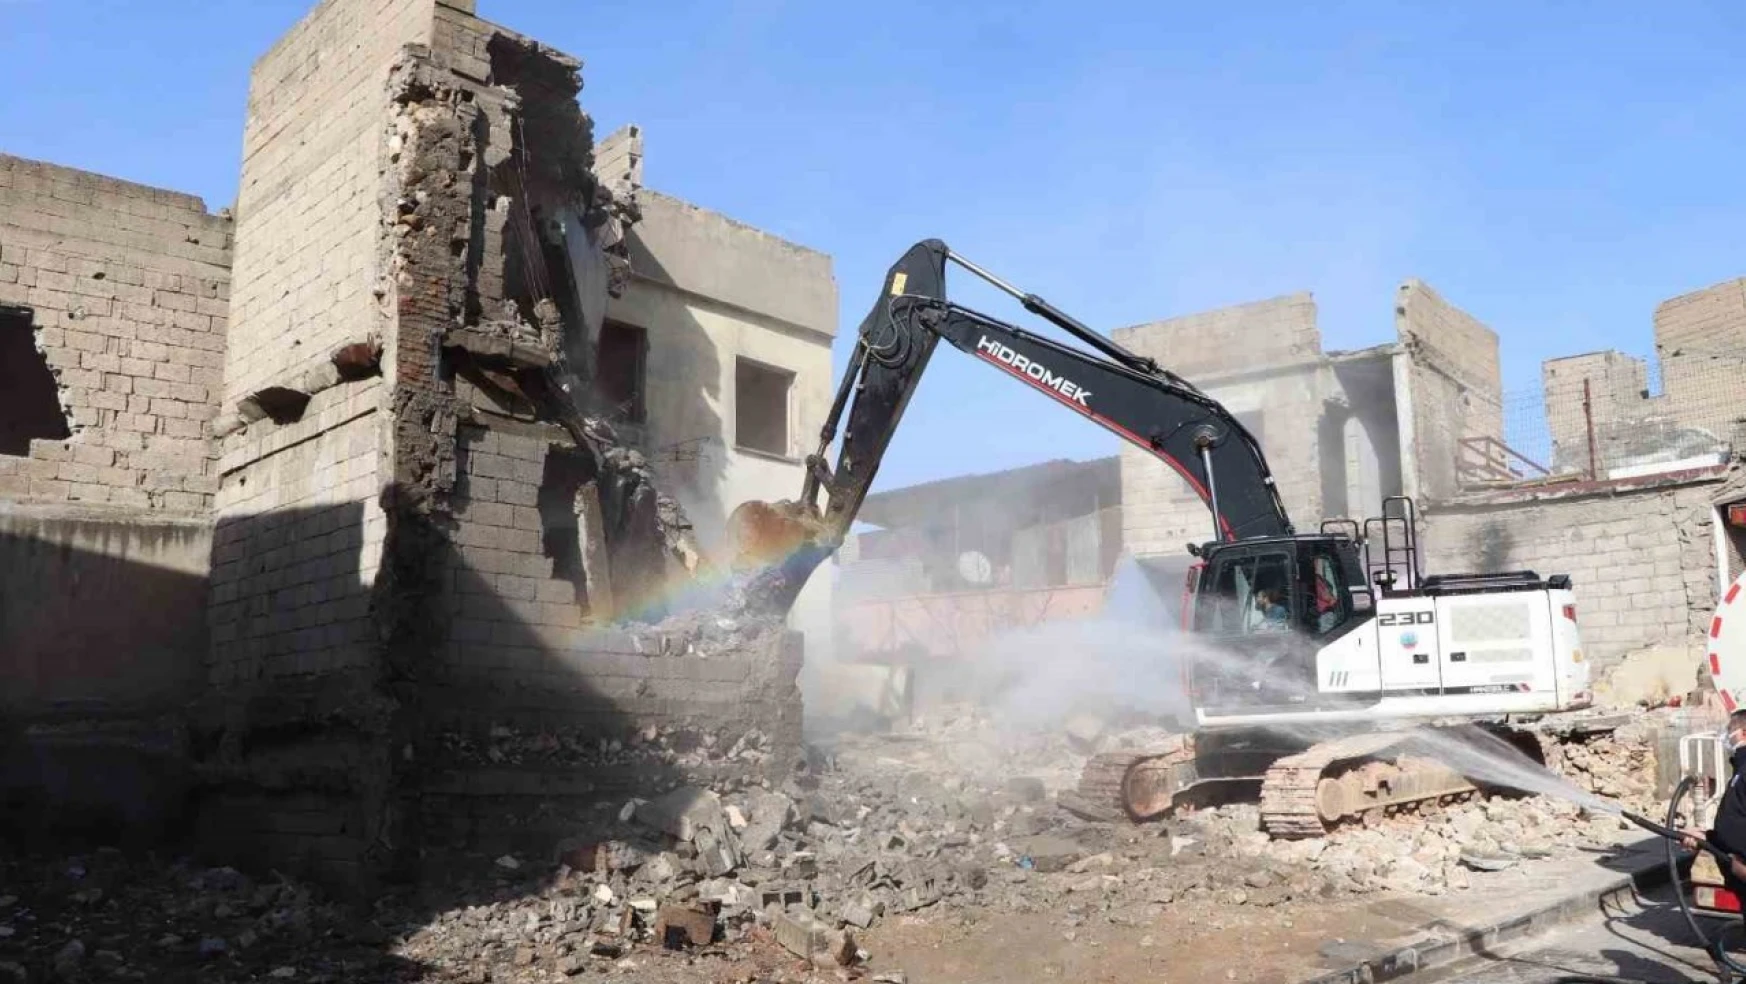 Siirt'te 1. Etap Kentsel Dönüşüm Projesi'nde 198 yapının yıkımına başlandı